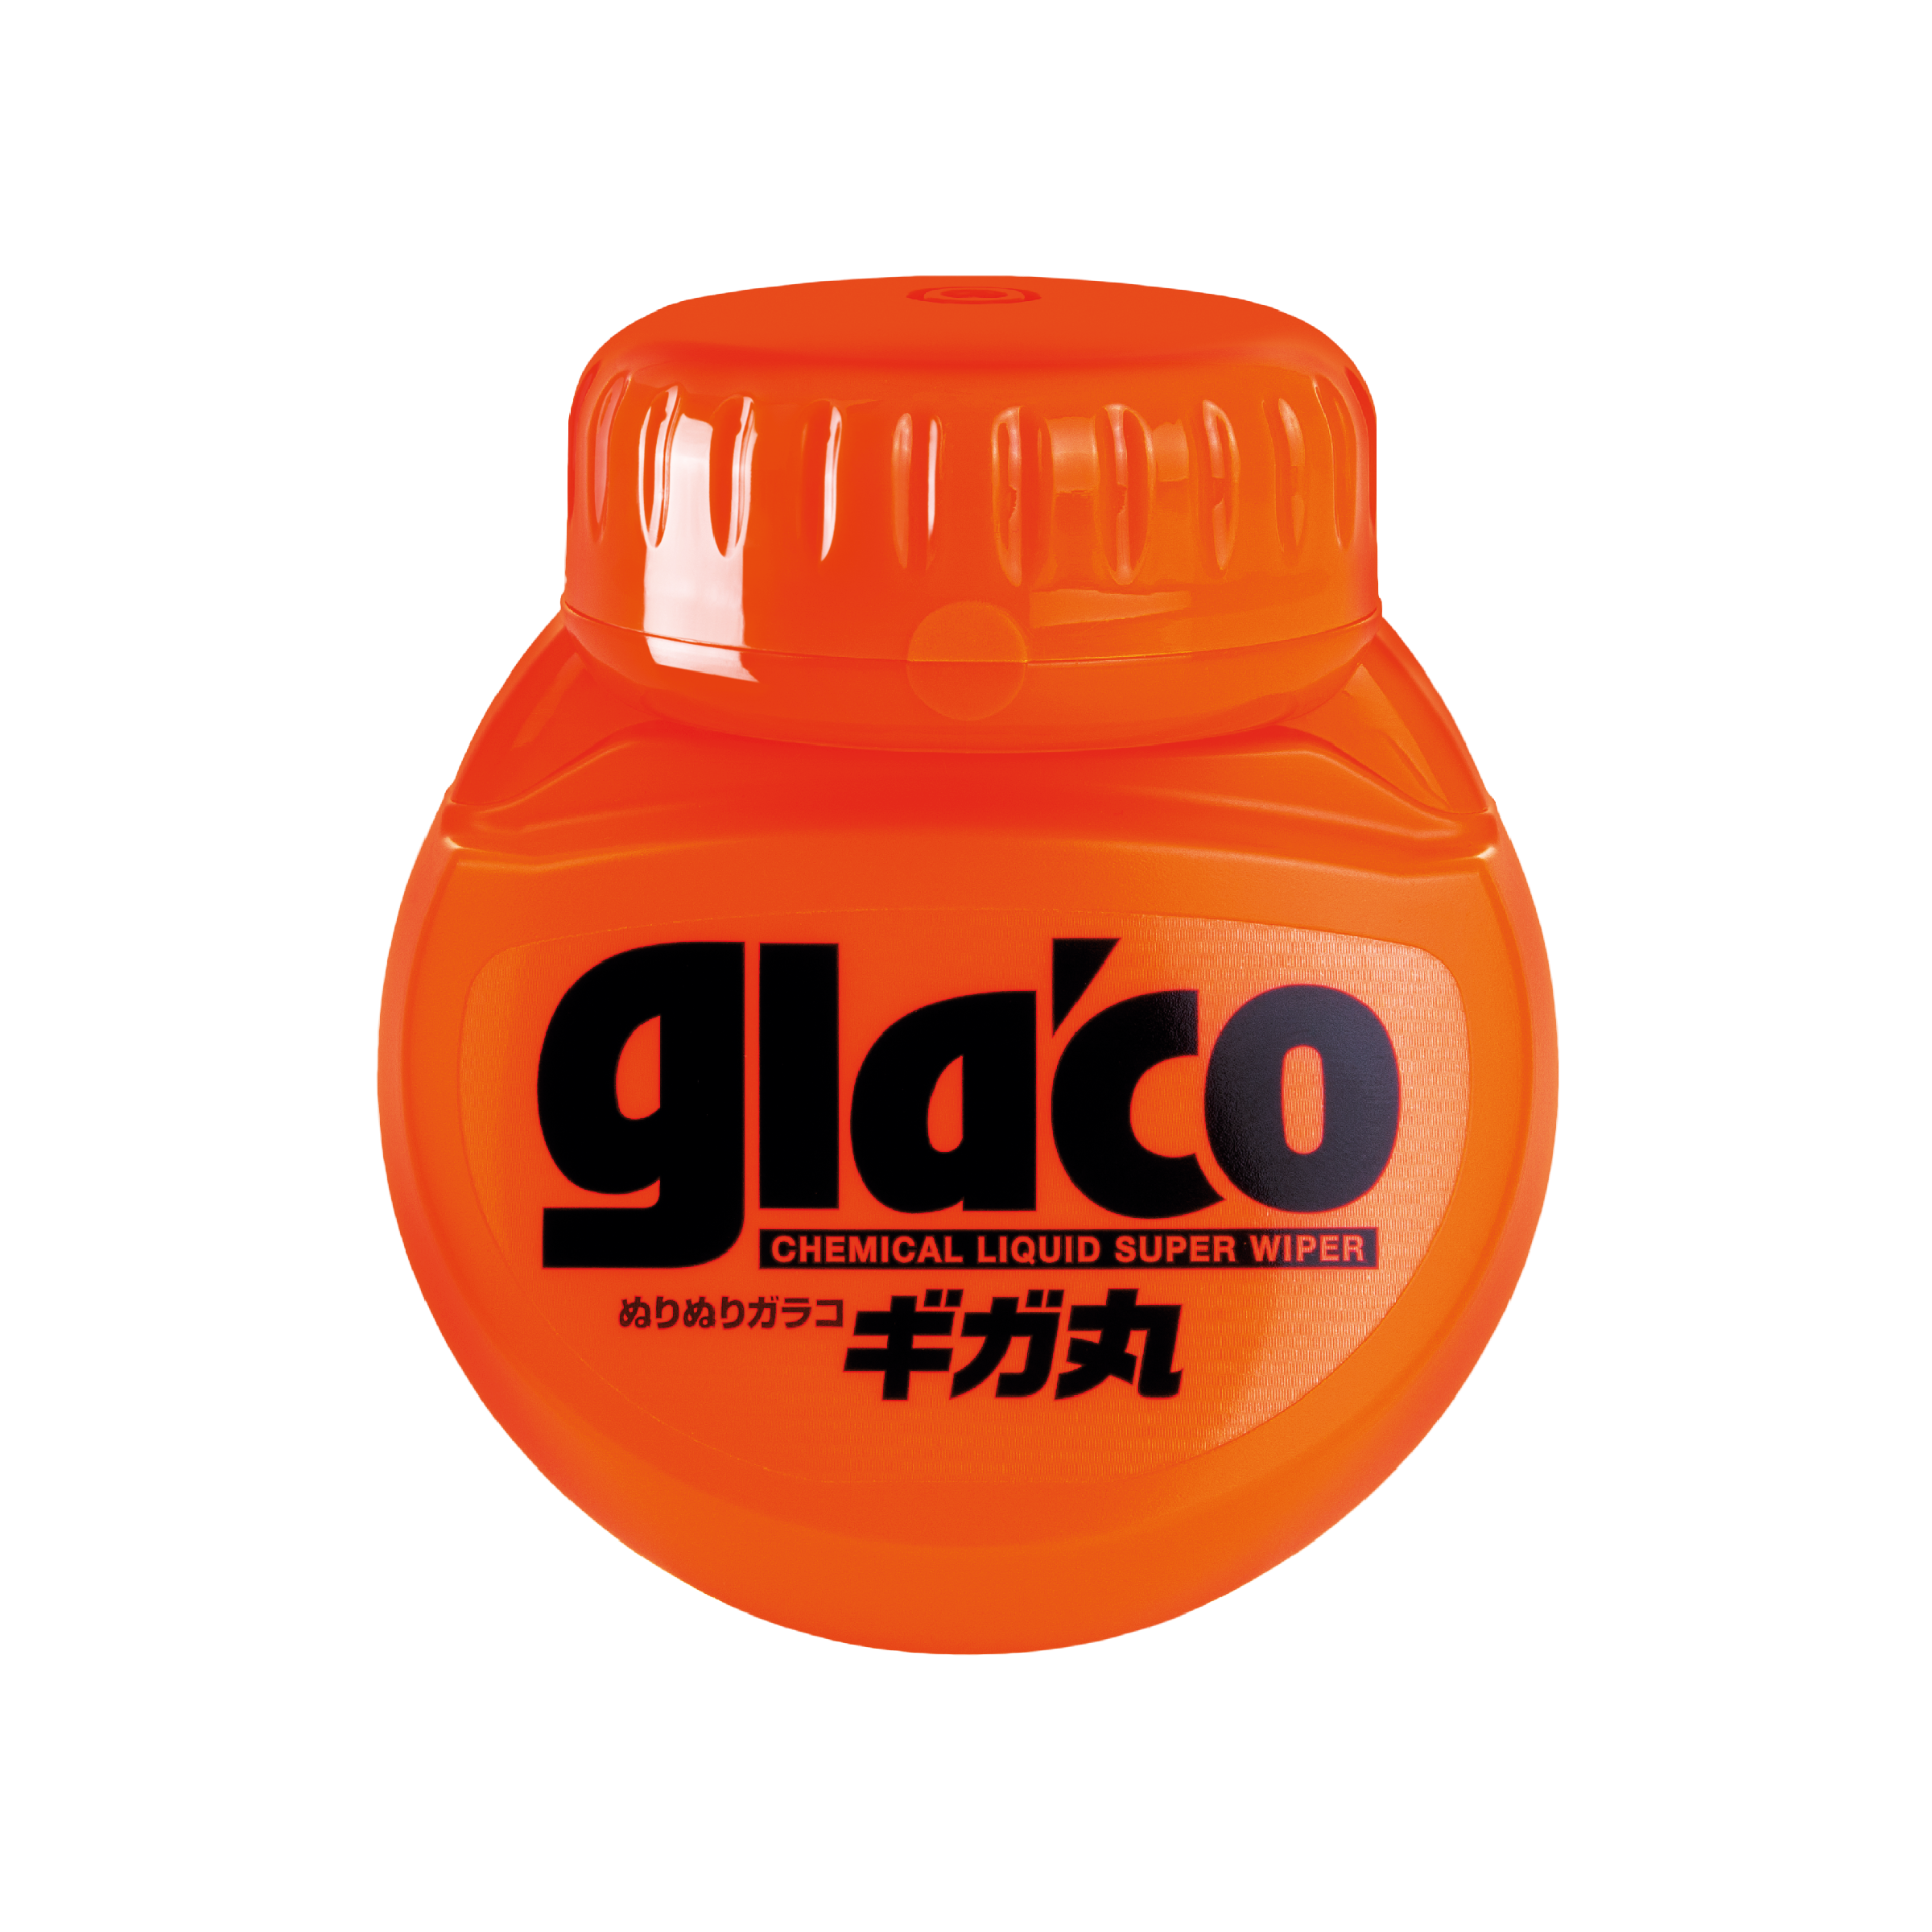 Soft99 Glaco Roll On Compound und Glaco Roll On Set Regenabweiser